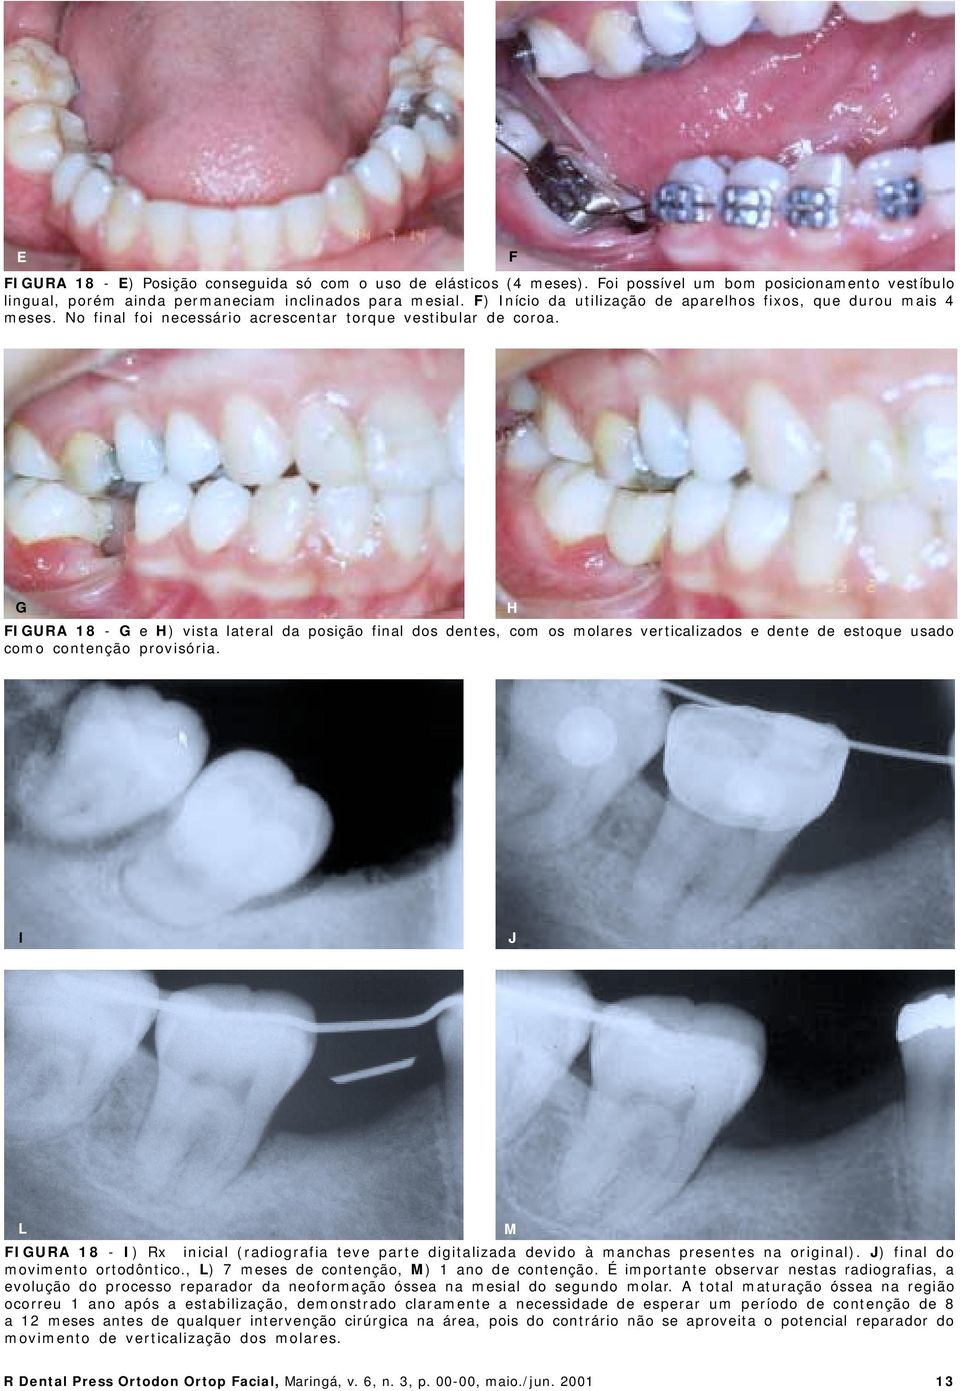 G H FIGURA 18 - G e H) vista lateral da posição final dos dentes, com os molares verticalizados e dente de estoque usado como contenção provisória.